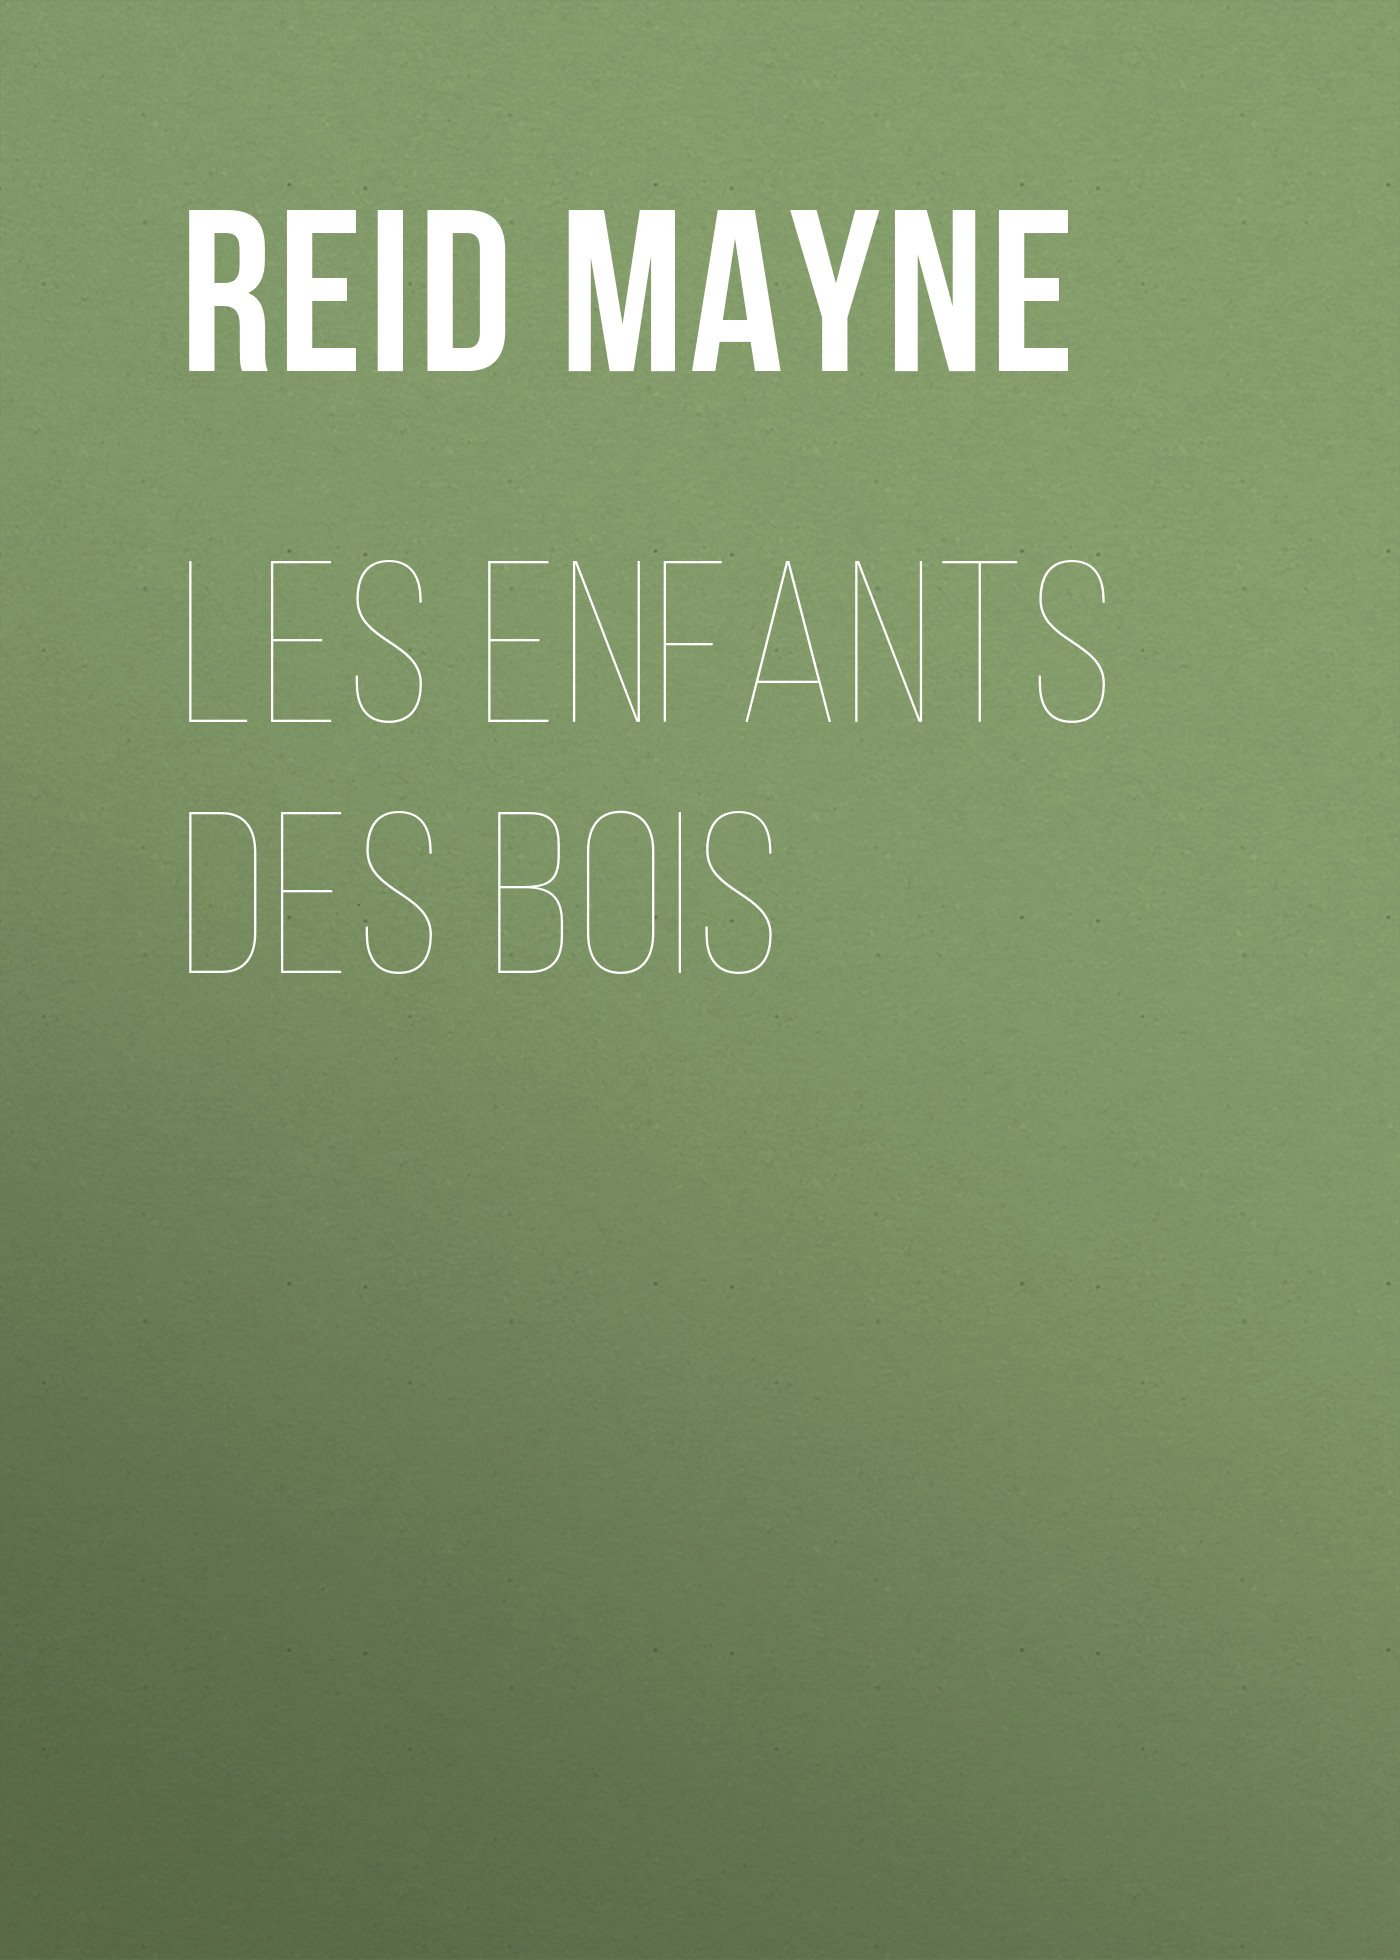 Книга Les enfants des bois из серии , созданная Mayne Reid, может относится к жанру Литература 19 века, Зарубежная старинная литература, Зарубежная классика. Стоимость электронной книги Les enfants des bois с идентификатором 25450876 составляет 0 руб.